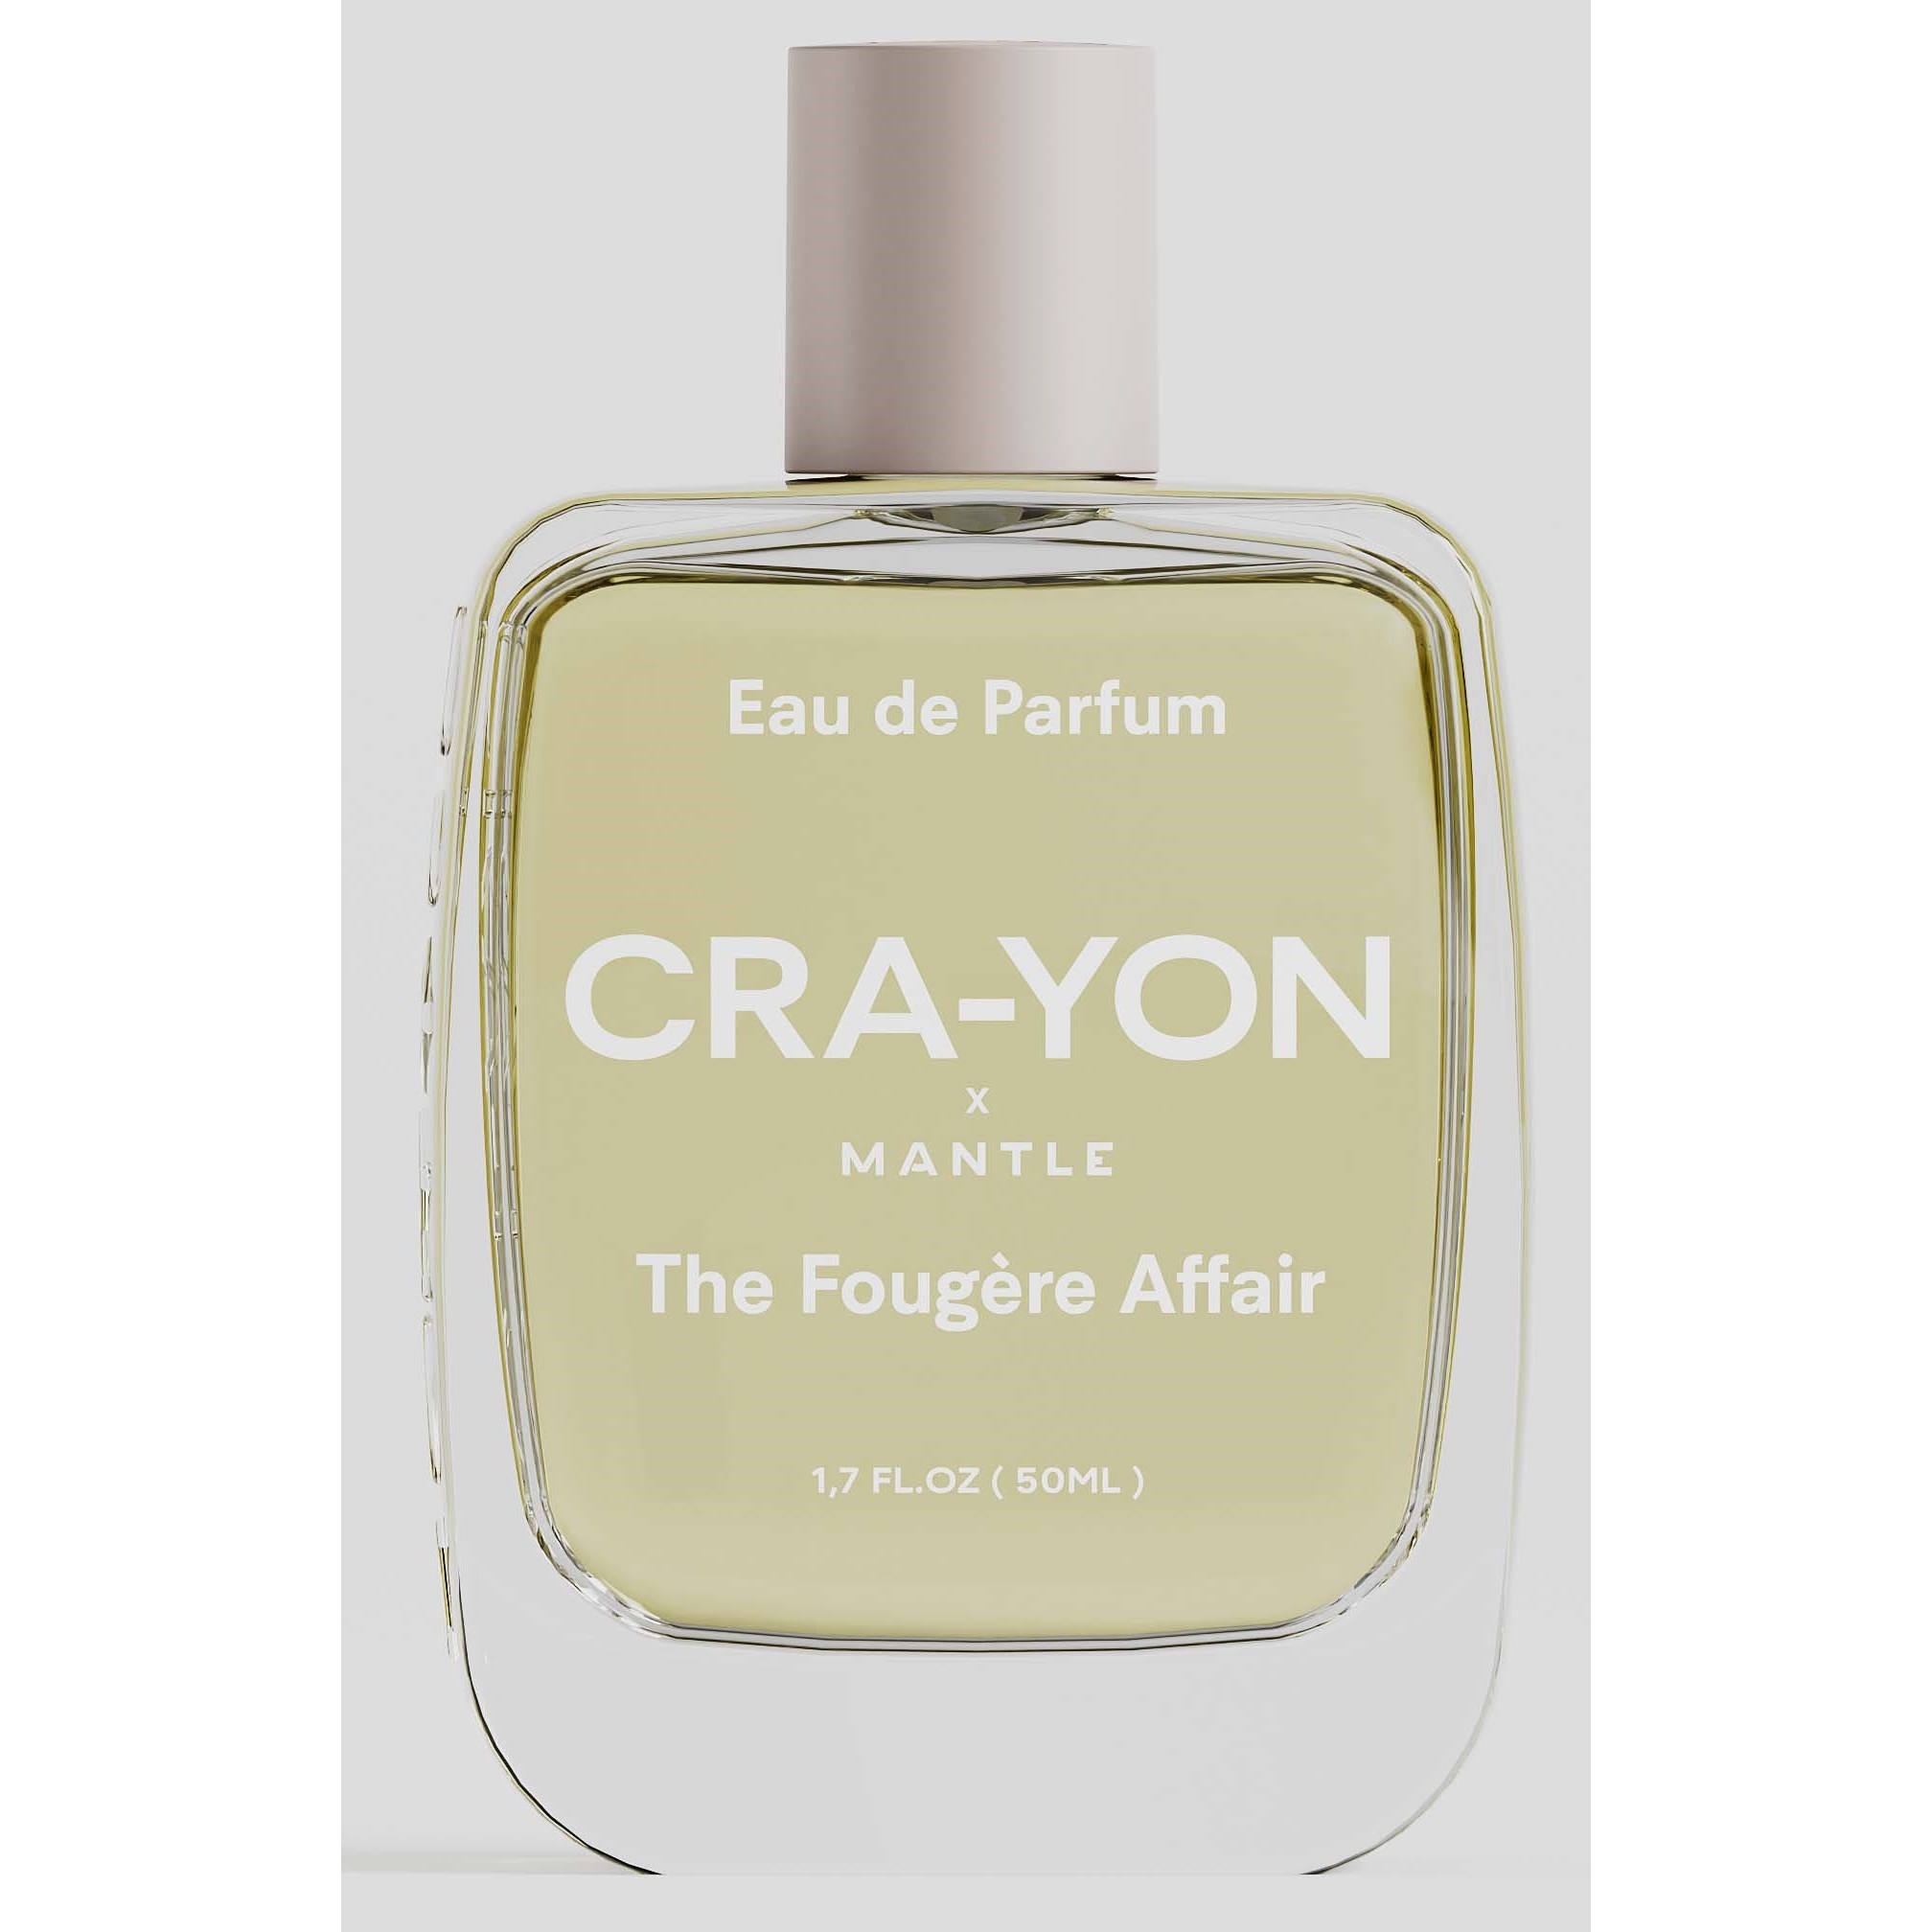 CRA-YON The Fougère Affair Eau De Parfum 50 ml